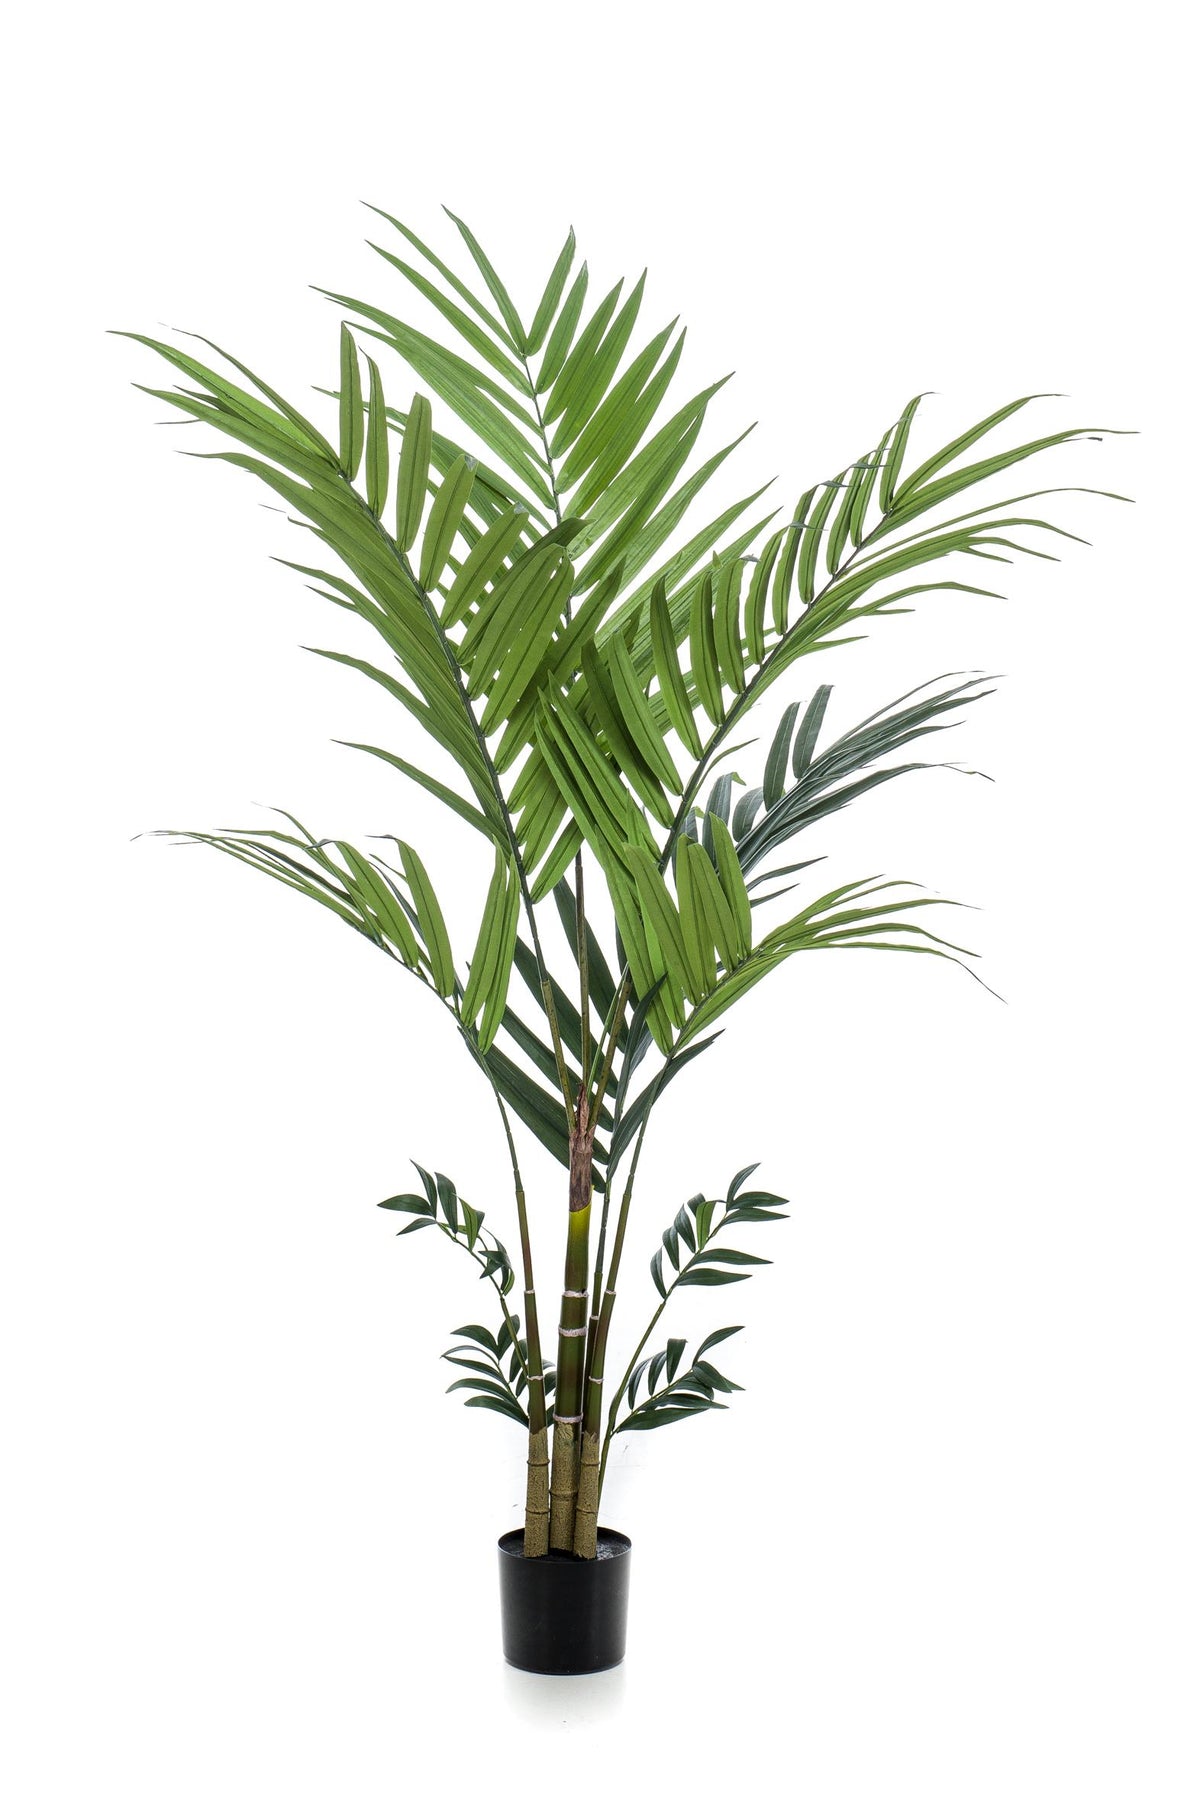 Kentiapalme - 180 cm - kunstpflanze